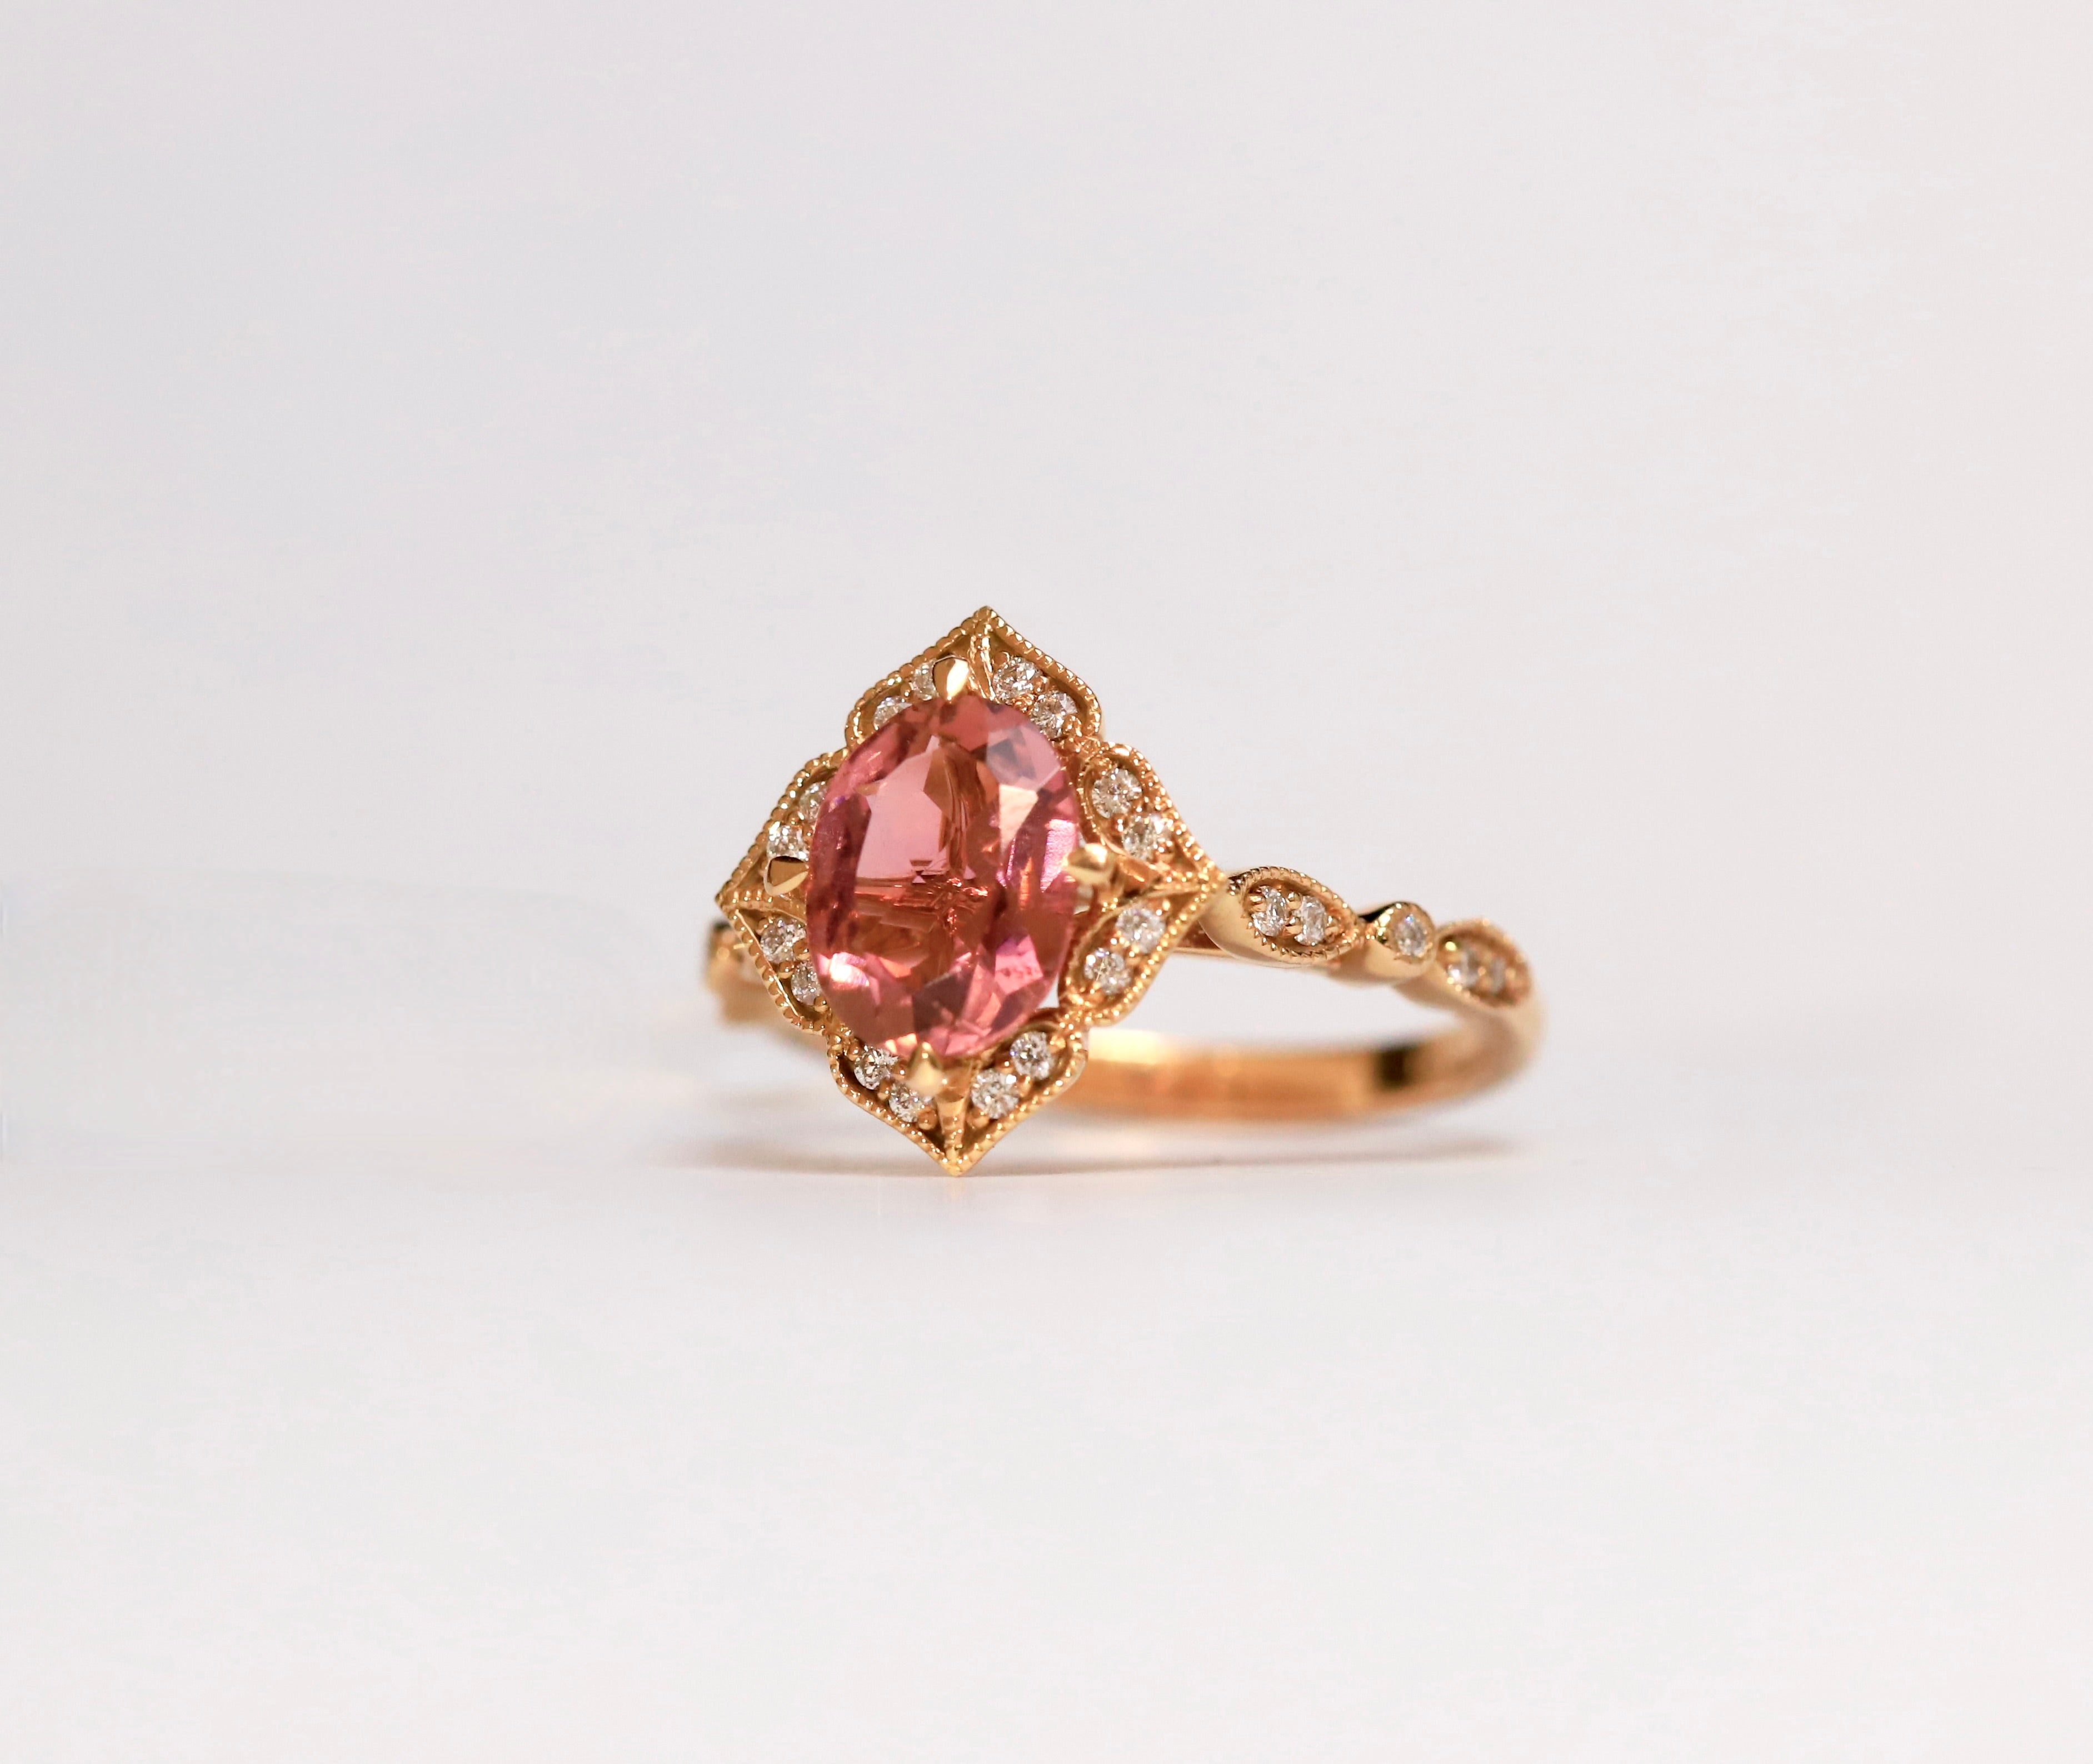 Handmade Veracity Jewelry Pink Tourmaline Ring Wedding Rings India | Ubuy